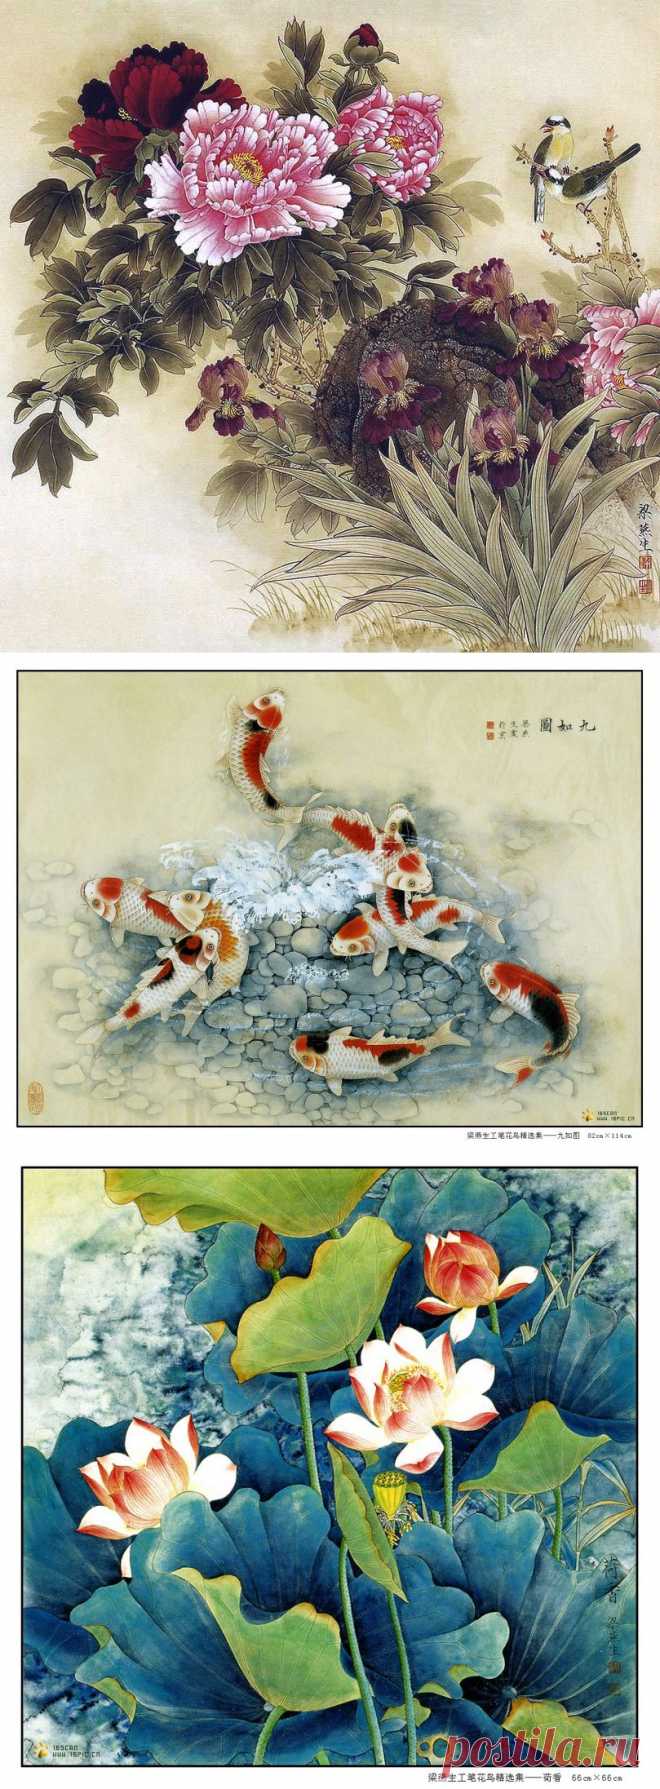 Китайская живопись от Liang Yan Sheng.
Liang Yan Sheng - родилась в Пекине в 1960 году.С конца 70-х годов изучает живопись у Mr. Sun Baohua Song ,особый акцент делается на тщательное изучение и изображение птиц и цветов .В 1982 году,благодаря ее соседям,знаменитым художникам Yu Induced Ching и  Liu Li,которые были ее наставники в течении десятилетия ,она  совершенствует свою технику  ,сформировав свой собственный стиль живописи.